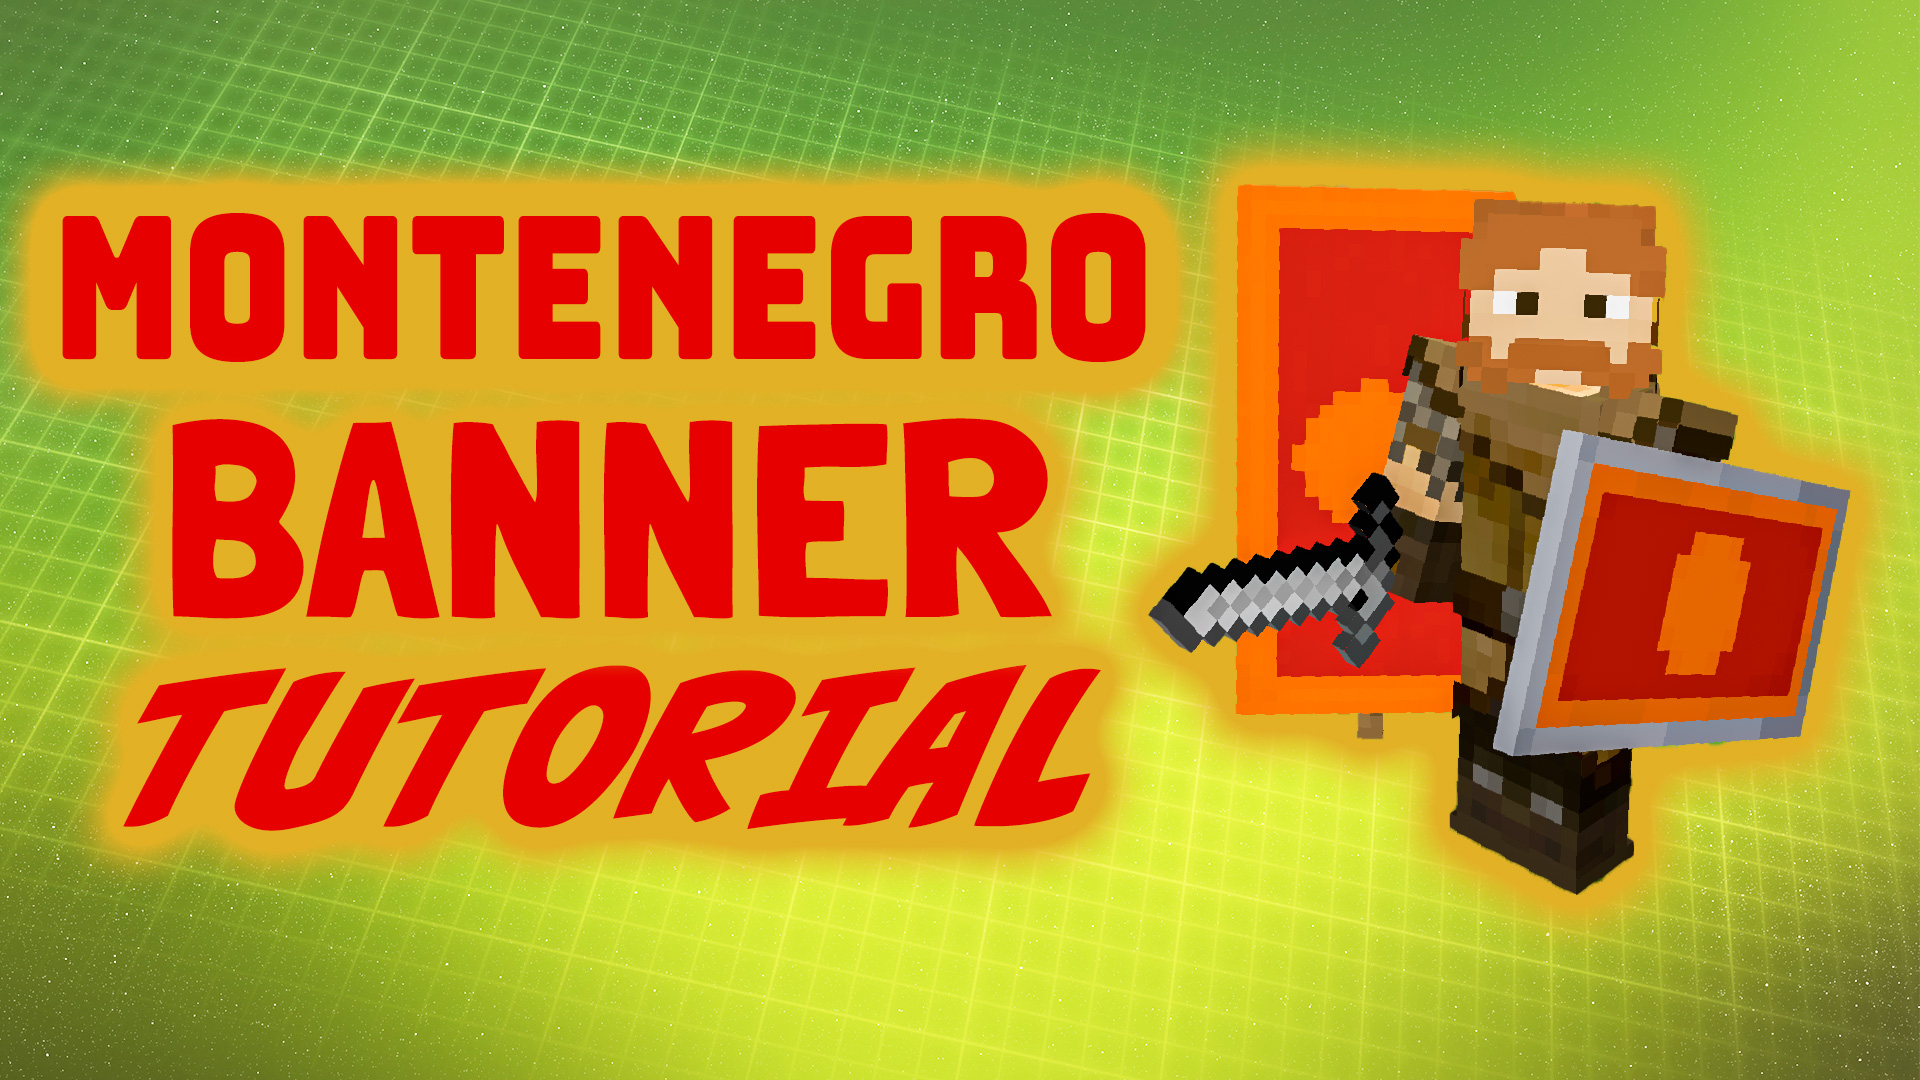 Minecraft Montenegro banner flag tutorial